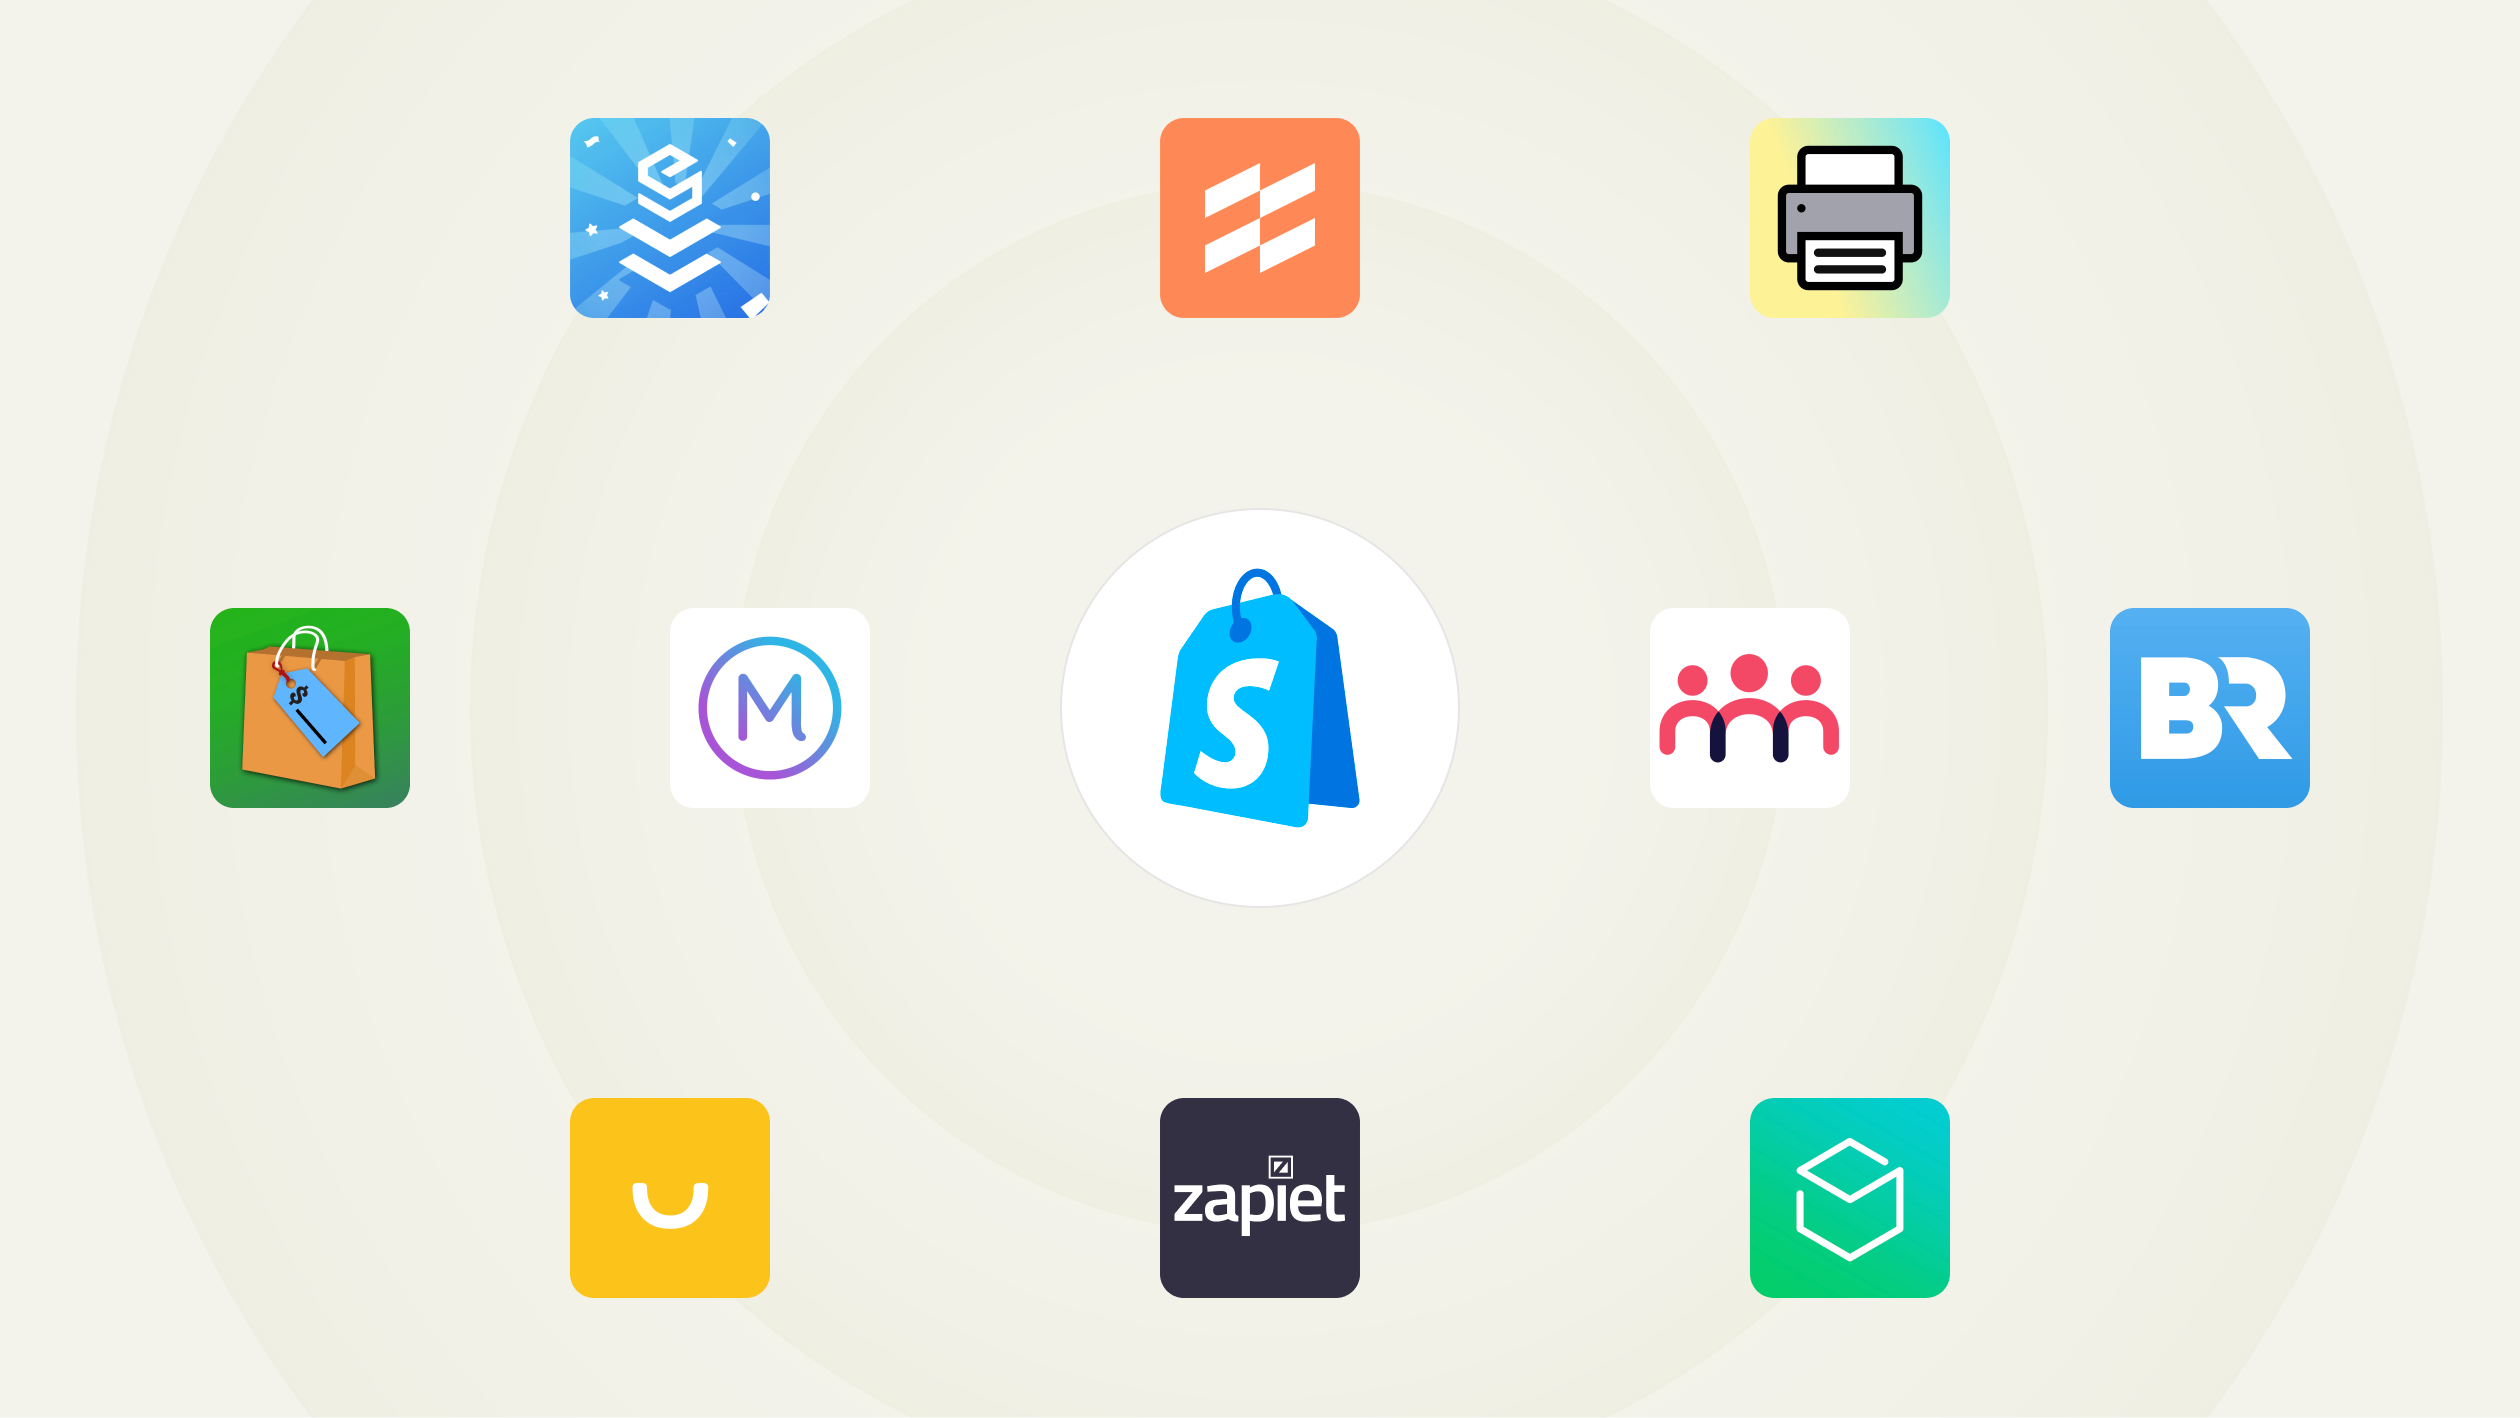 Een verzameling pictogrammen van apps. In het midden staat het logo van Shopify POS met daaromheen pictogrammen van populaire apps: EasyTeam, Filljoy, Zapiet, Optizio, Stocky, Order Printer, Smile, Better Reports, Marsello en Endear.